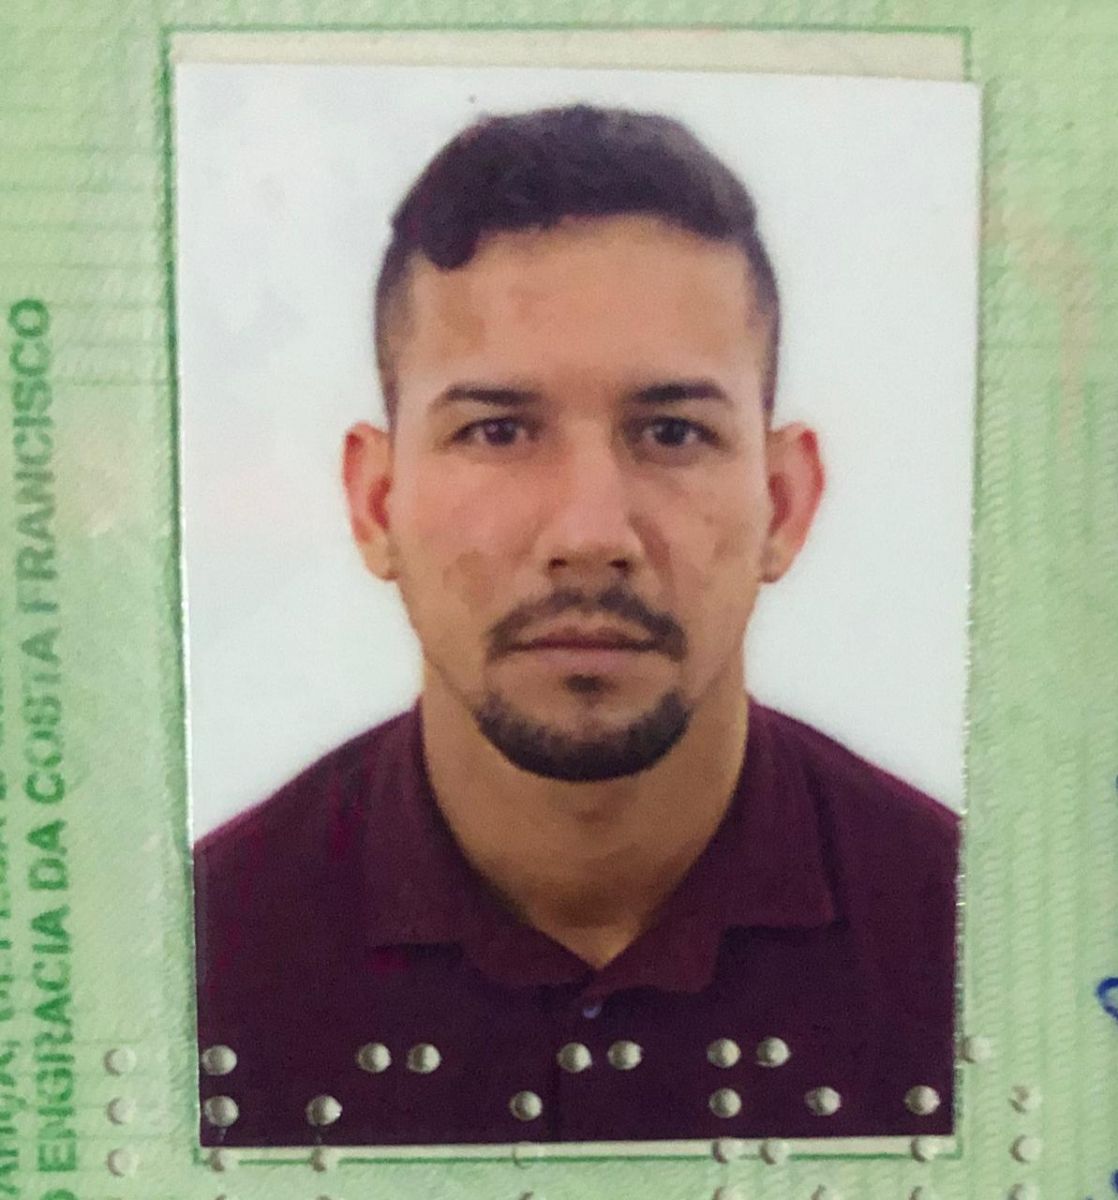 IDENTIFICADO: Polícia identifica passageiro que morreu com a cabeça esmagada durante capotamento de carro - News Rondônia